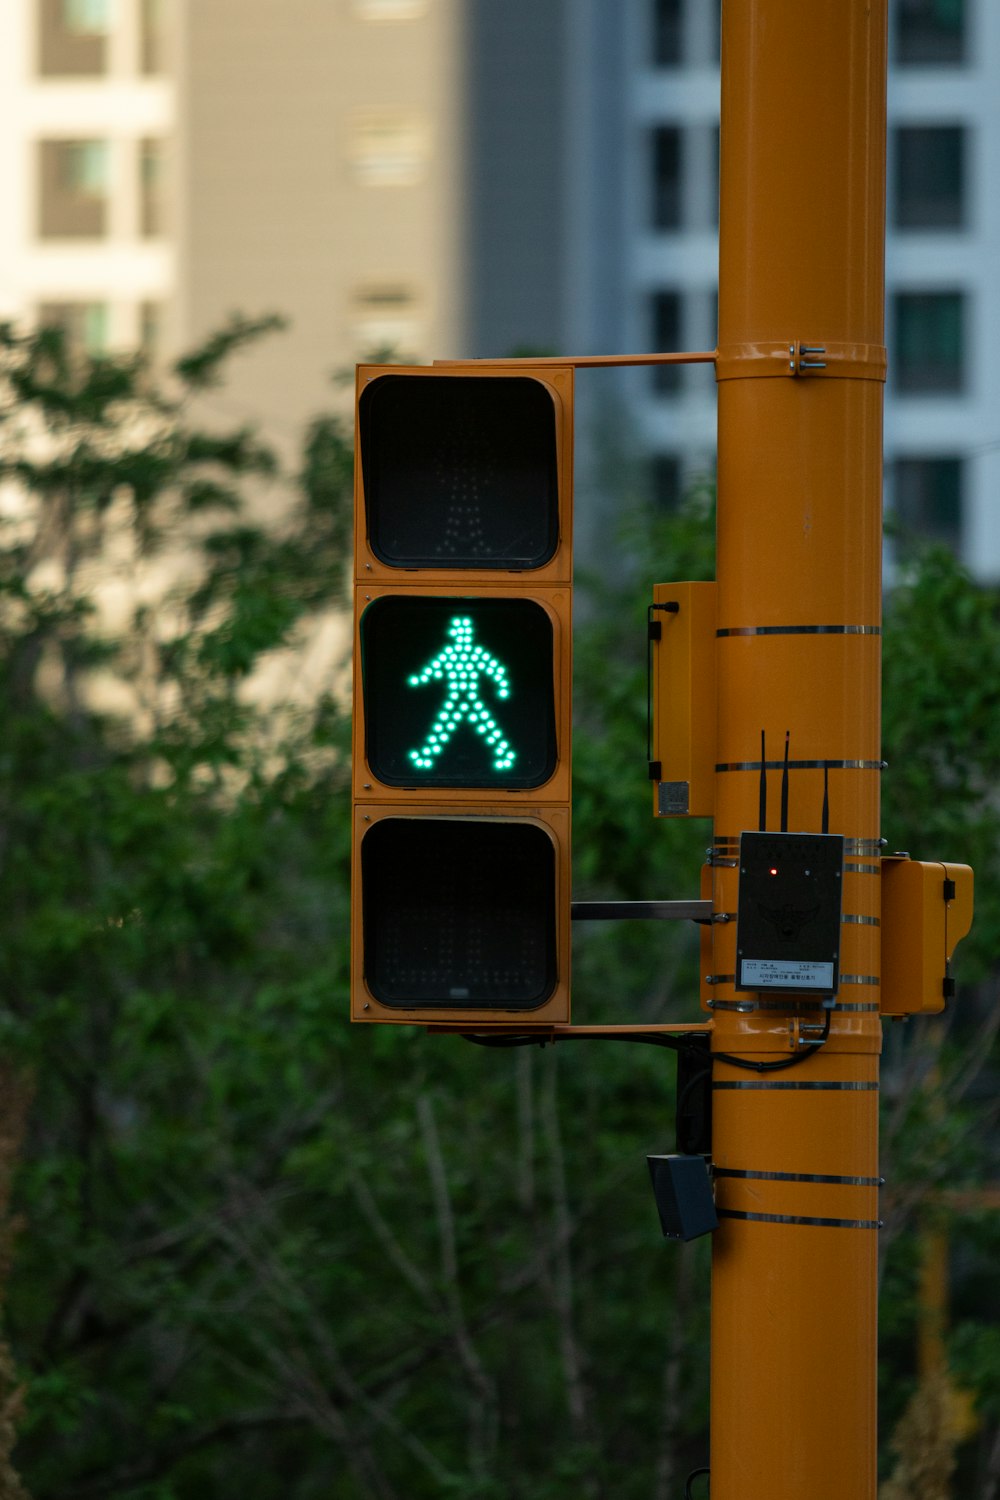 緑色の歩行者標識が付いた信号機